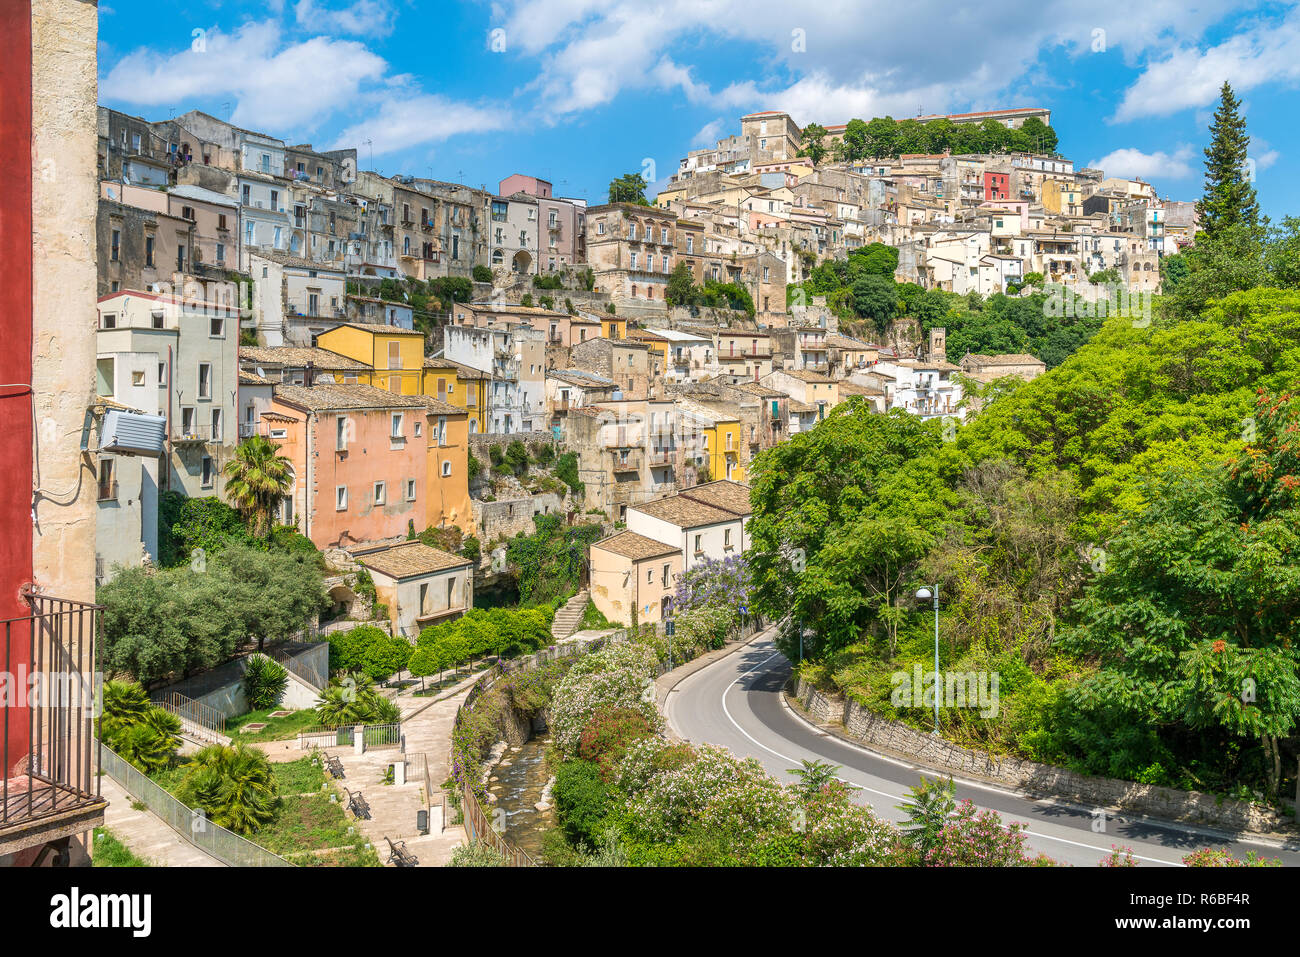 Vue panoramique de Ragusa Ibla, ville baroque en Sicile (Sicilia), dans le sud de l'Italie. Banque D'Images